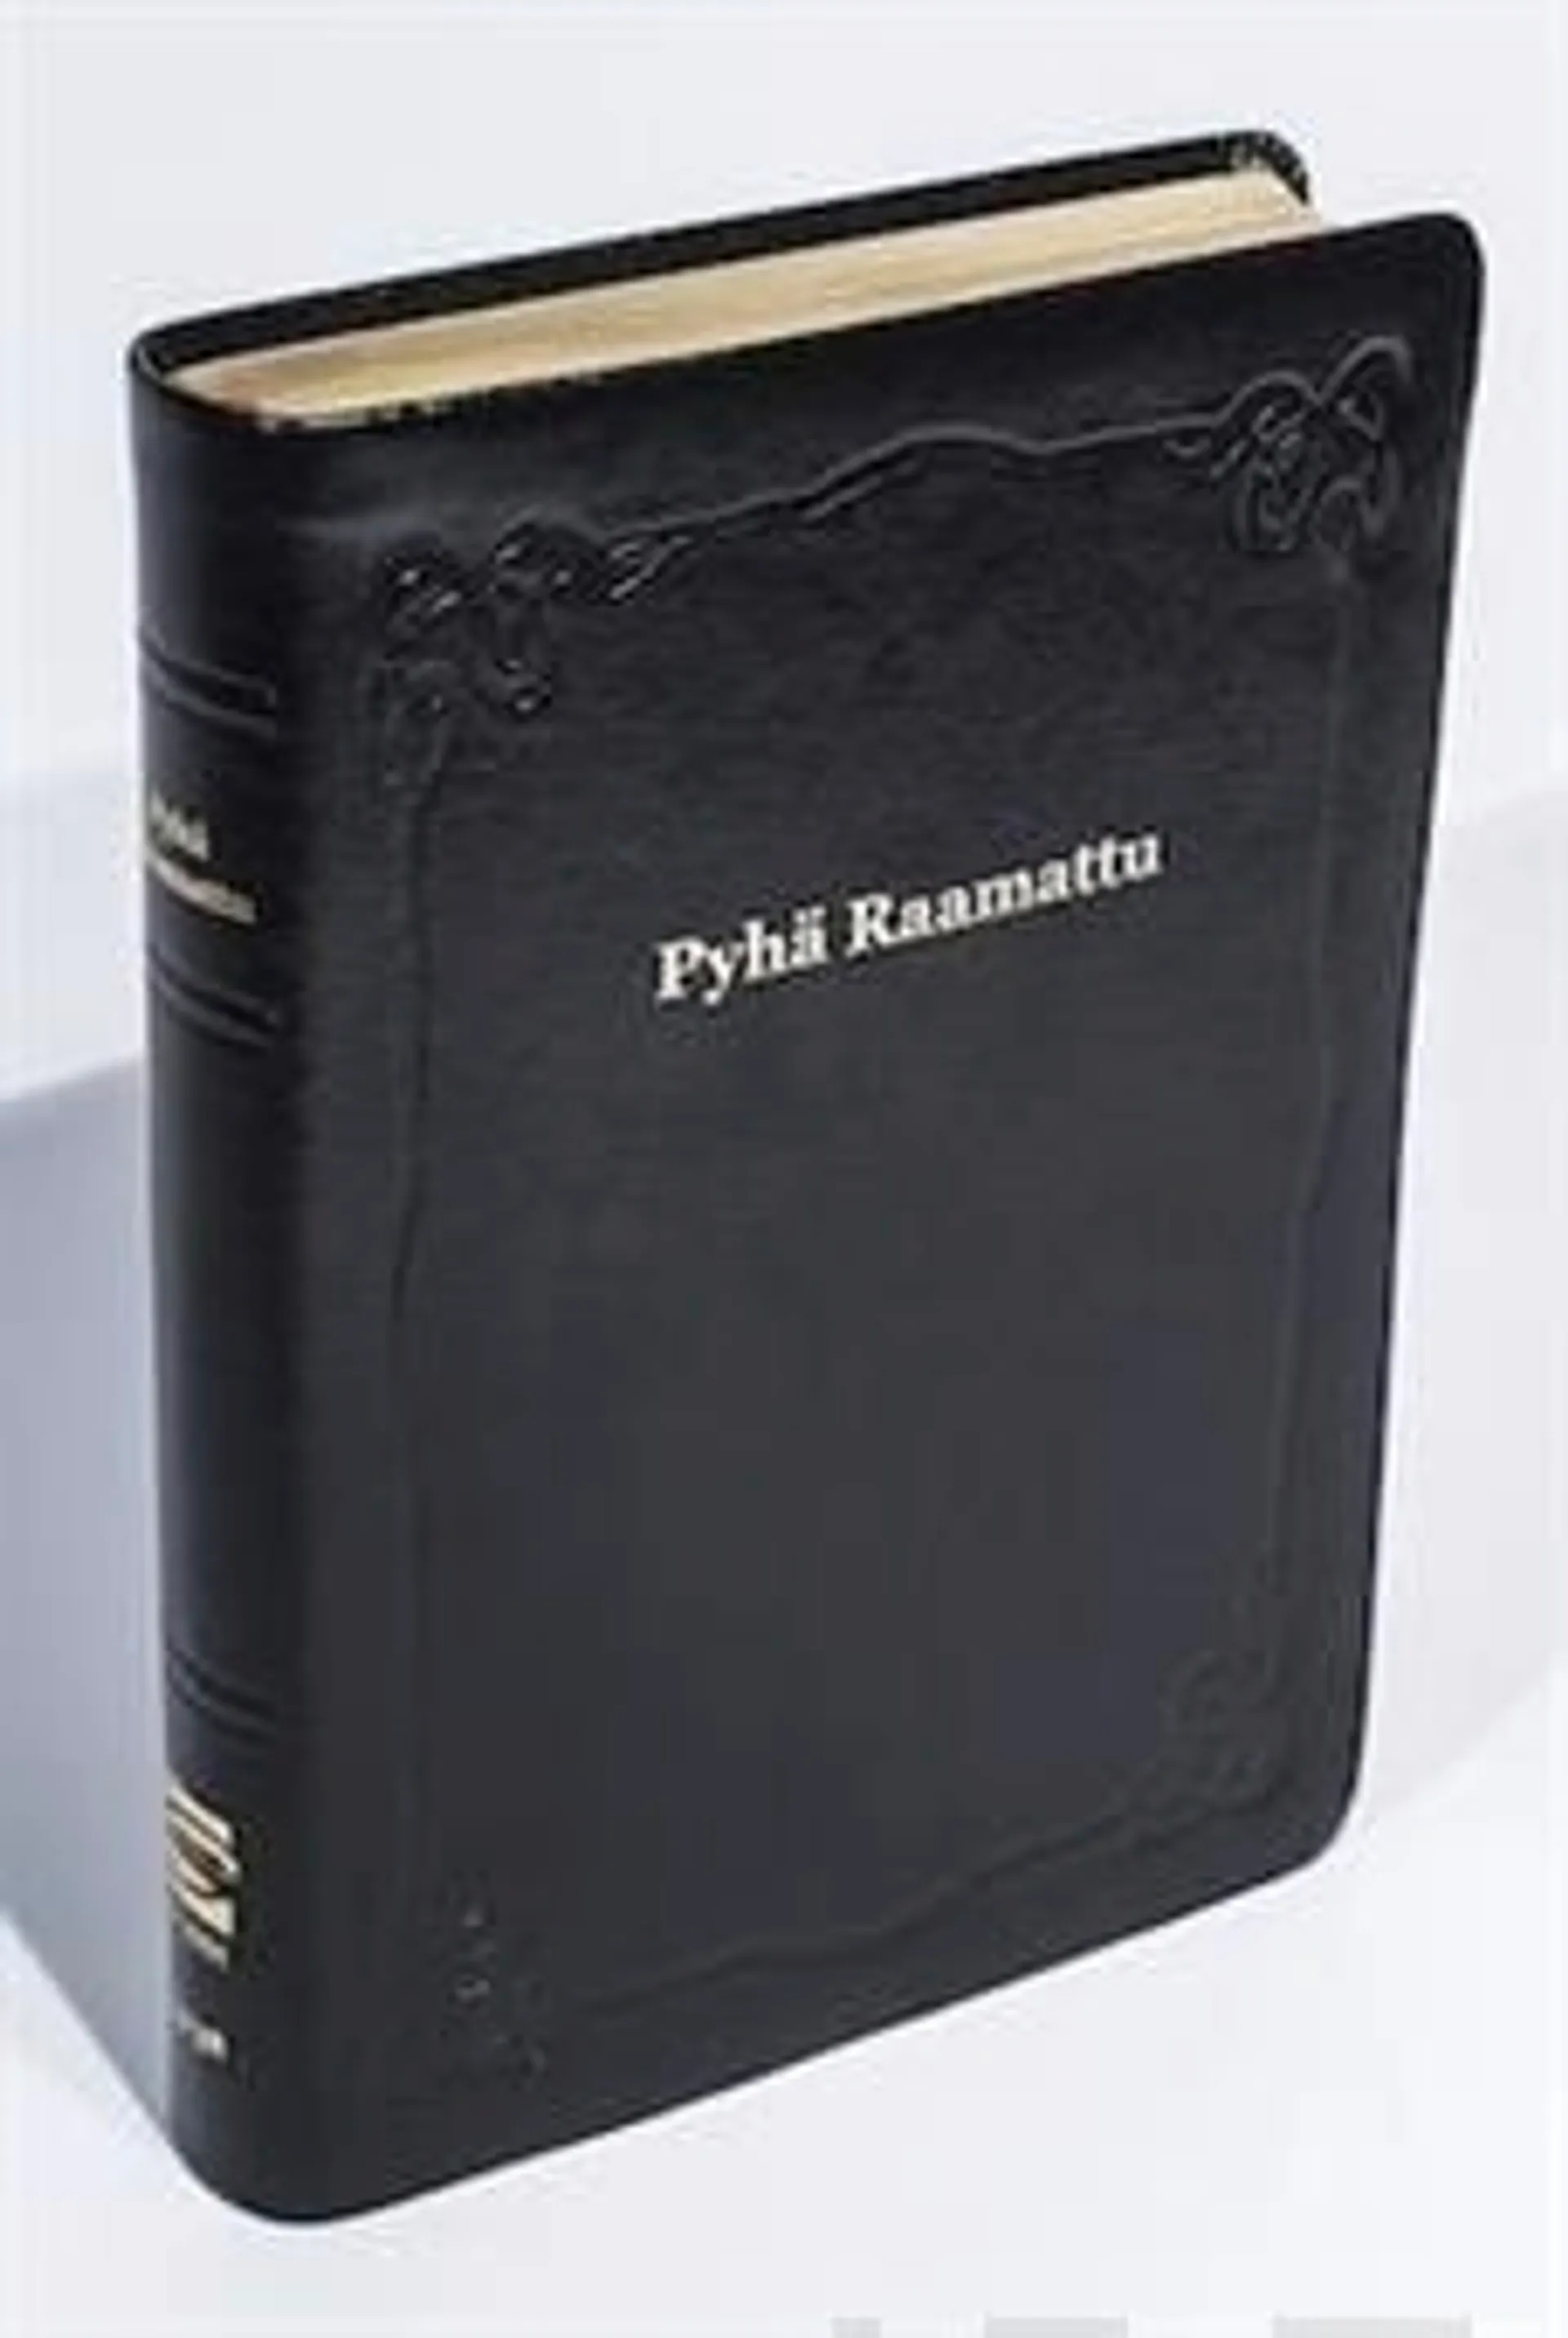 Raamattu (johdannoin, iso koko, marginaali, musta R47, nahkakansi)